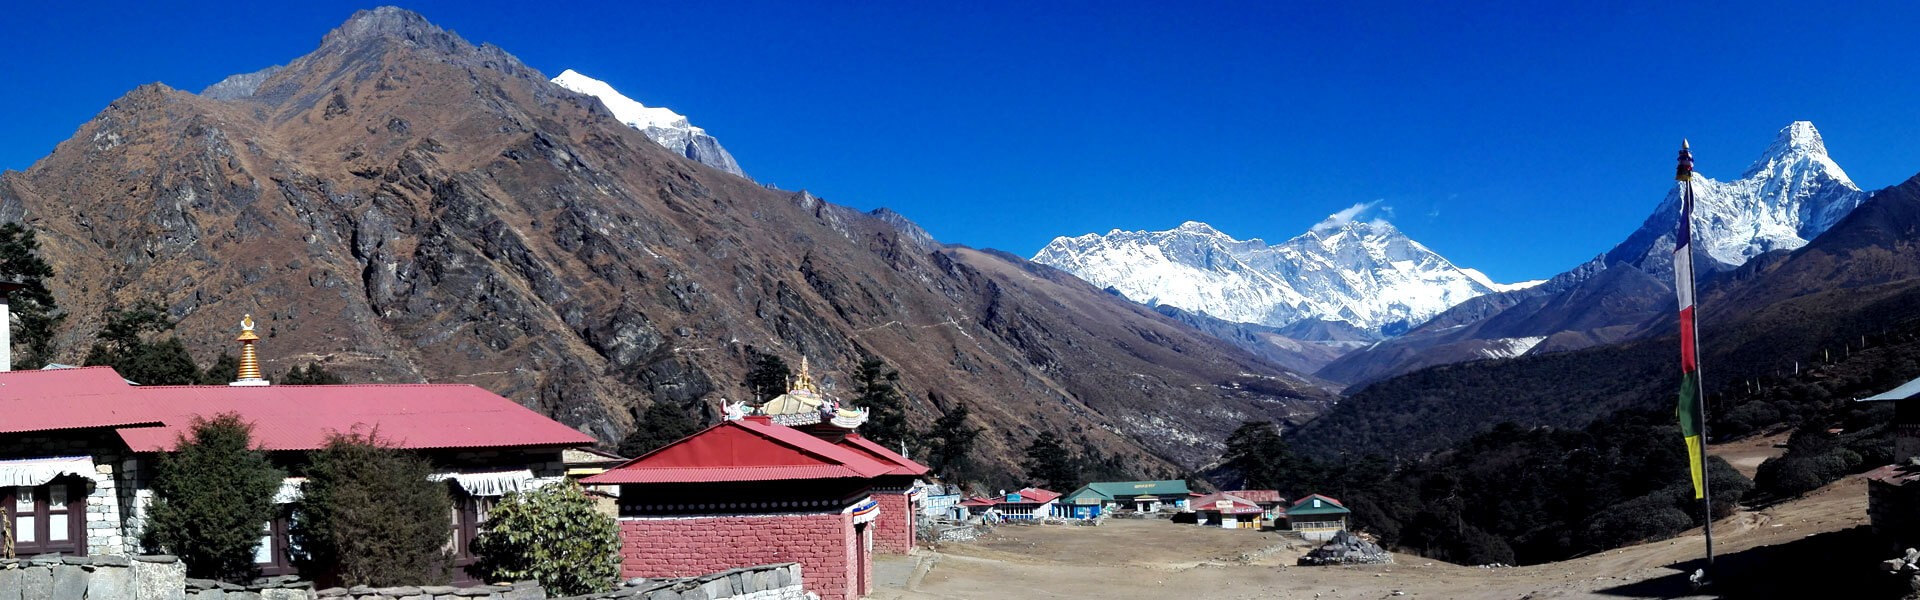 Everest Panorana View Trek